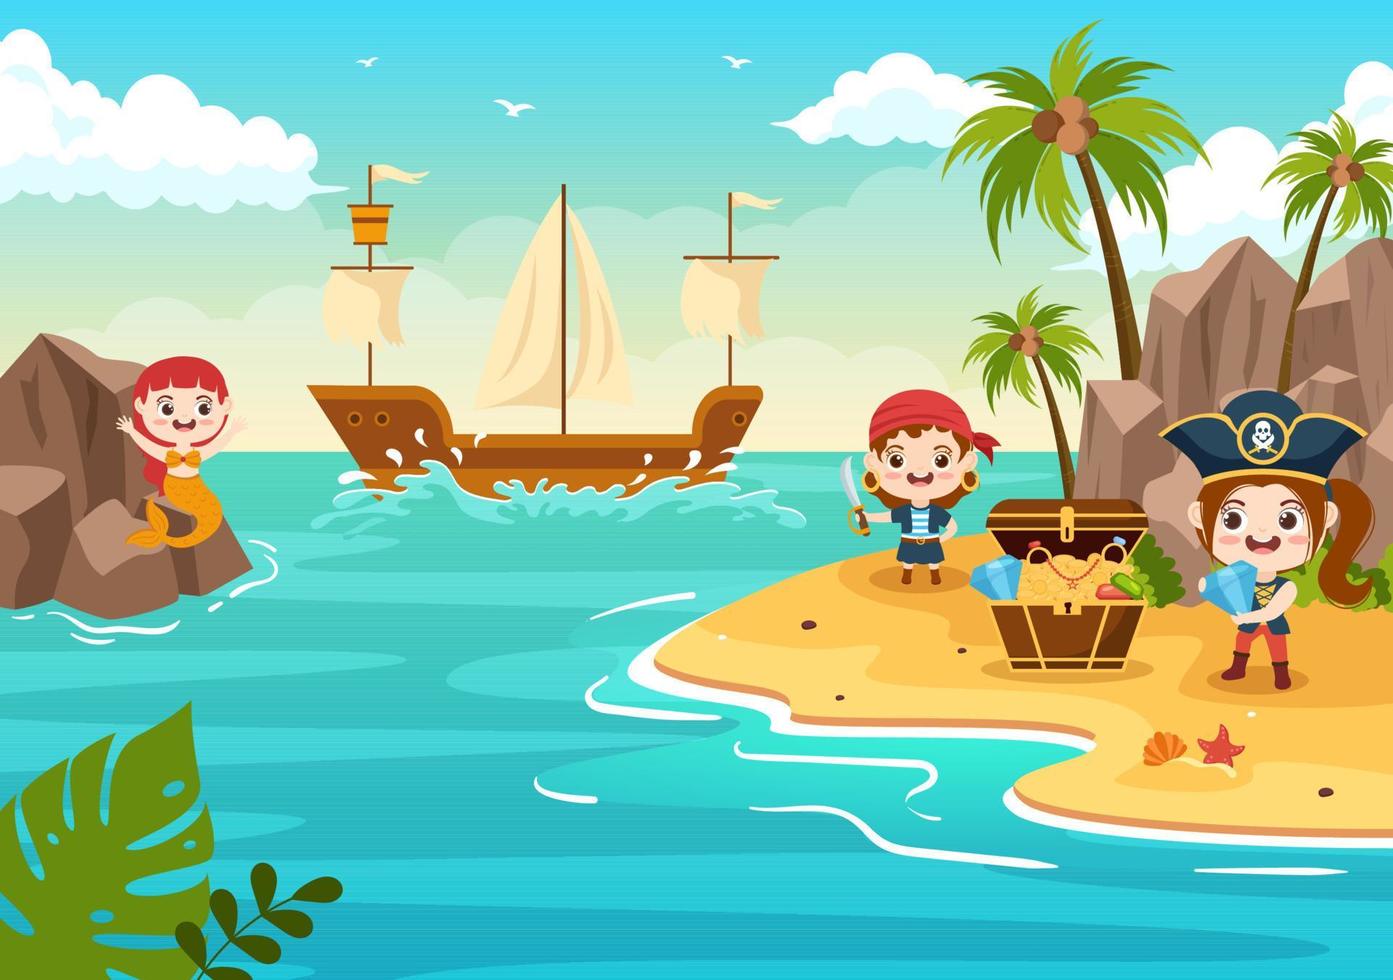 söt pirattecknad figurillustration med trähjul, bröst, vintage karibien, pirater och jolly roger på fartyget på havet eller ön vektor